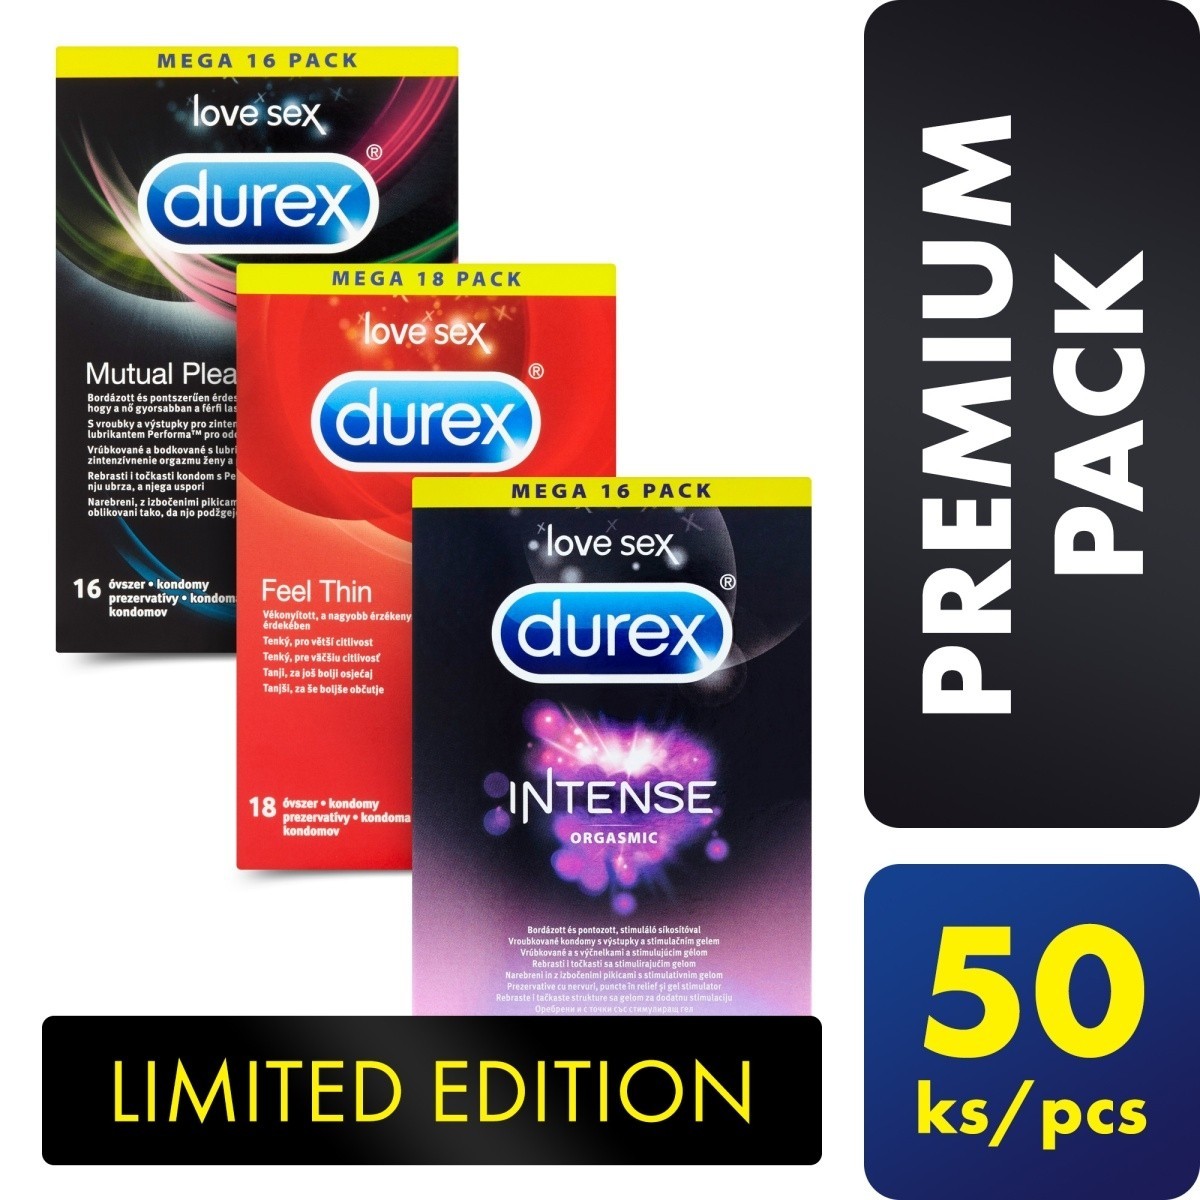 Sada Durex Premium Pack